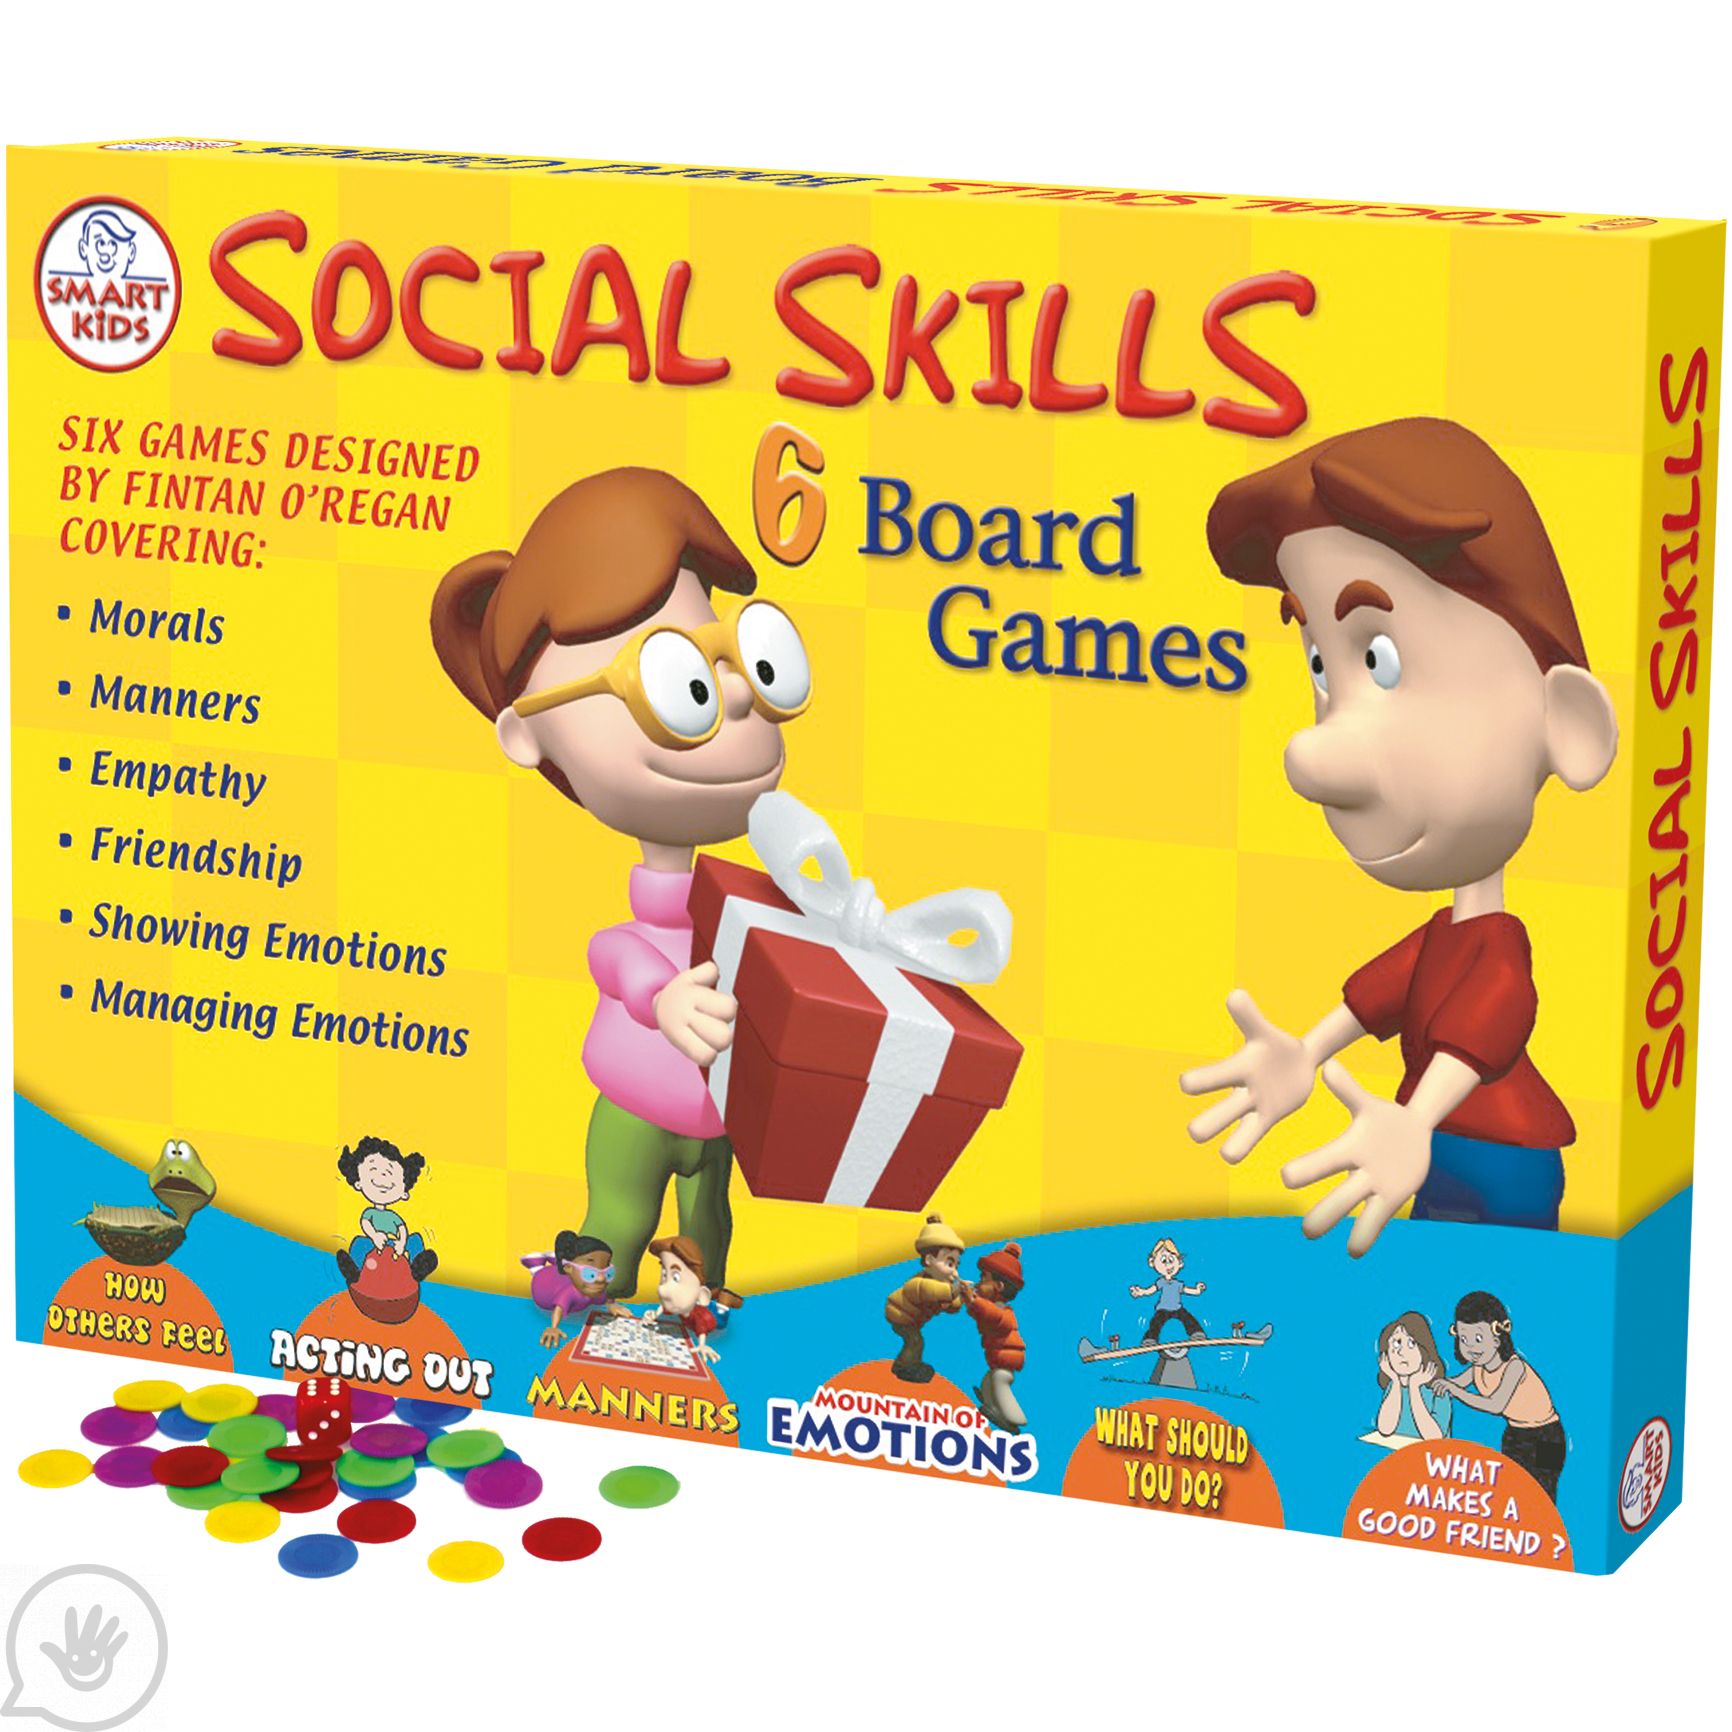 The Skill Board